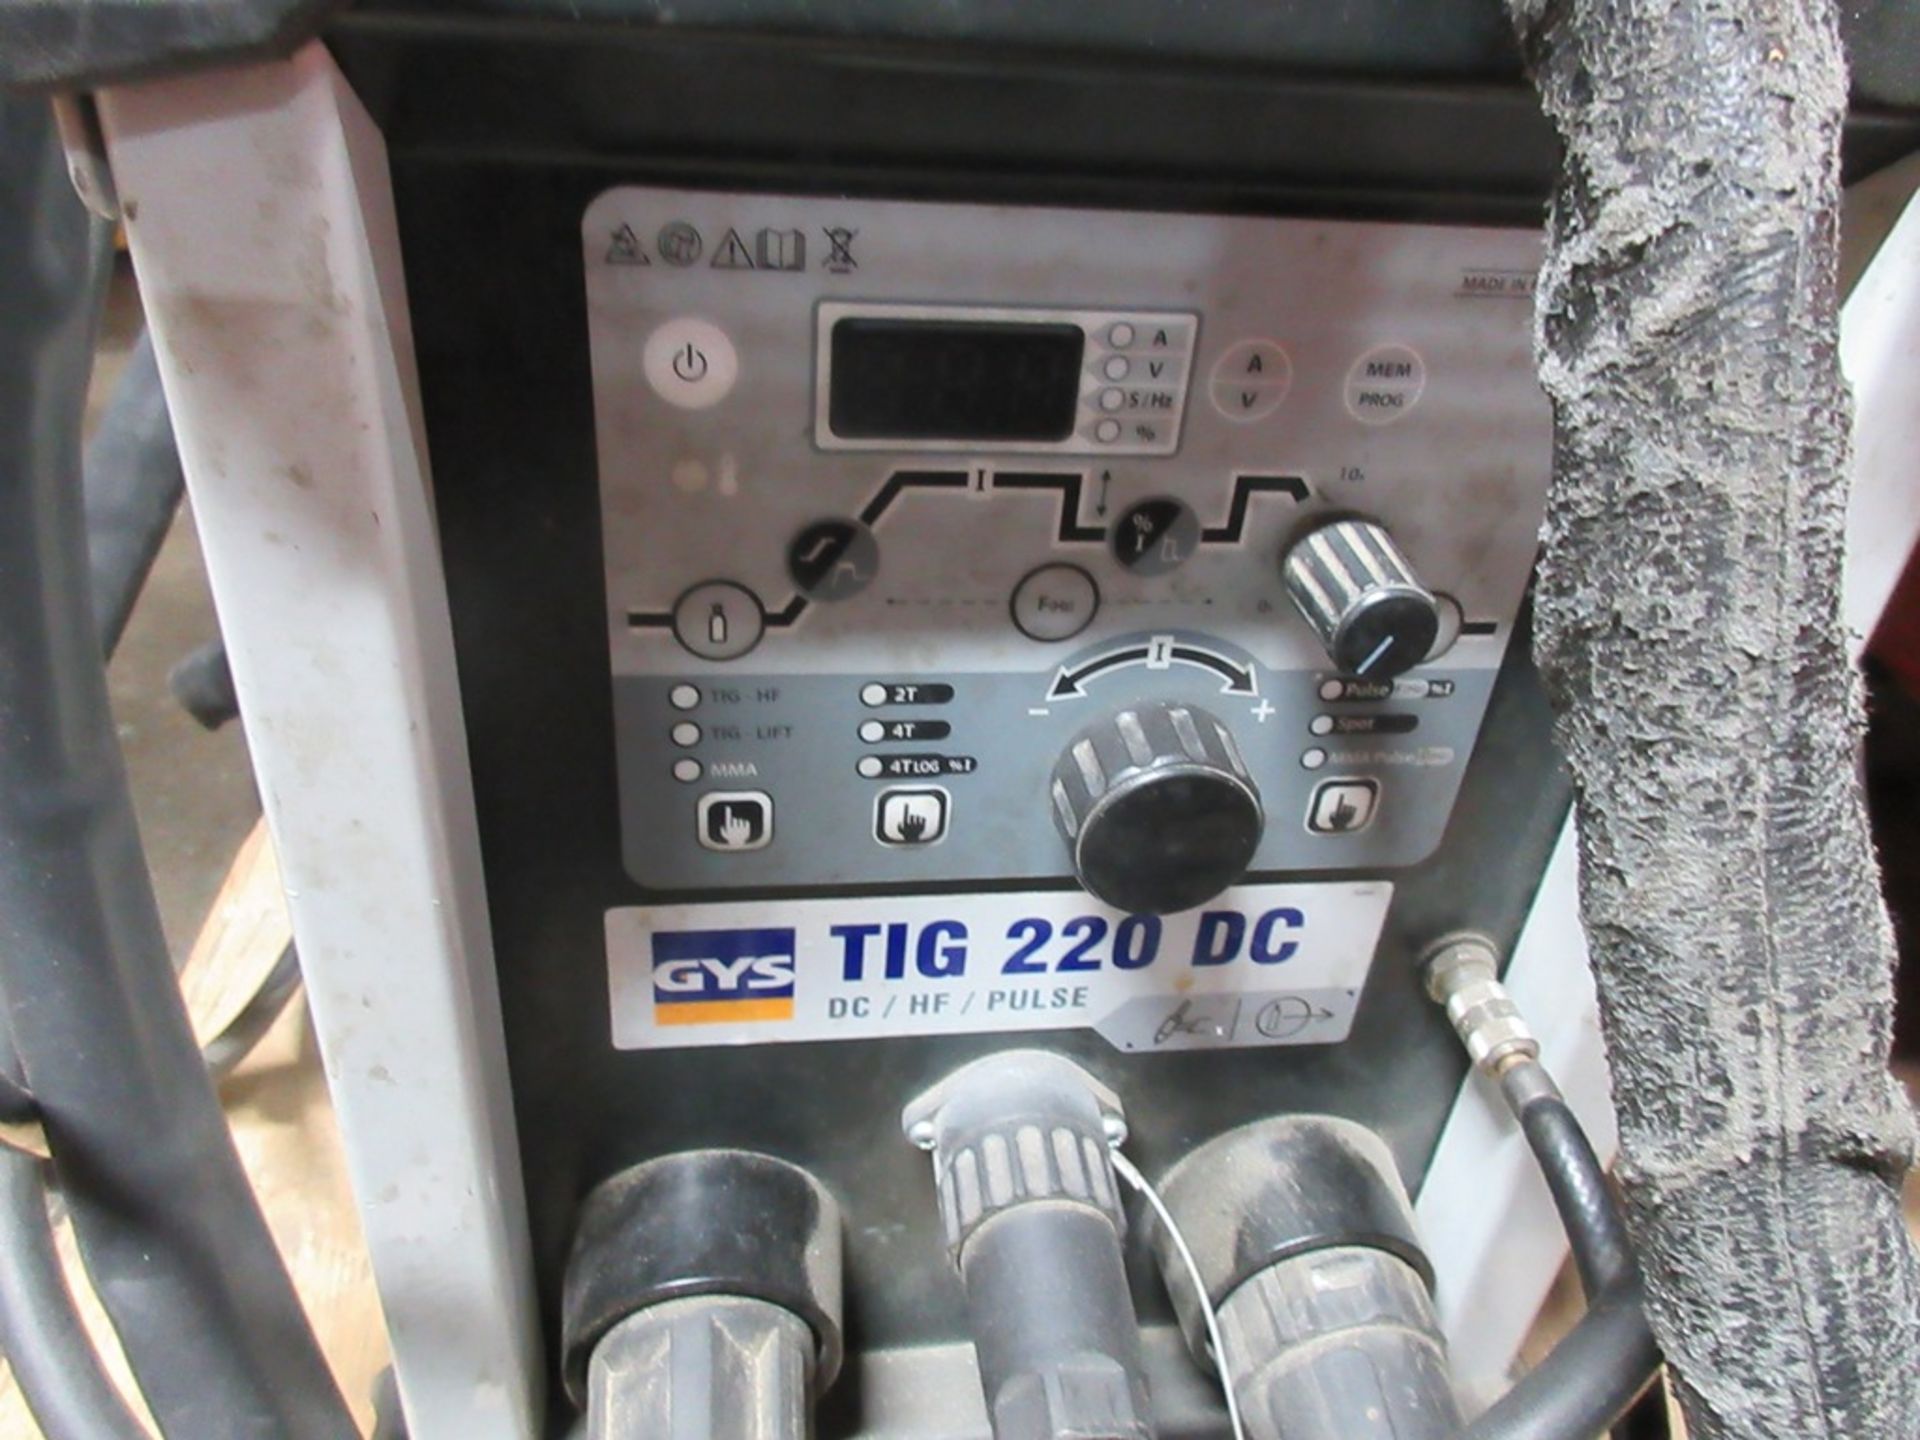 GYS Tig 220 DC/HF/Pulse tig welder - Image 2 of 4